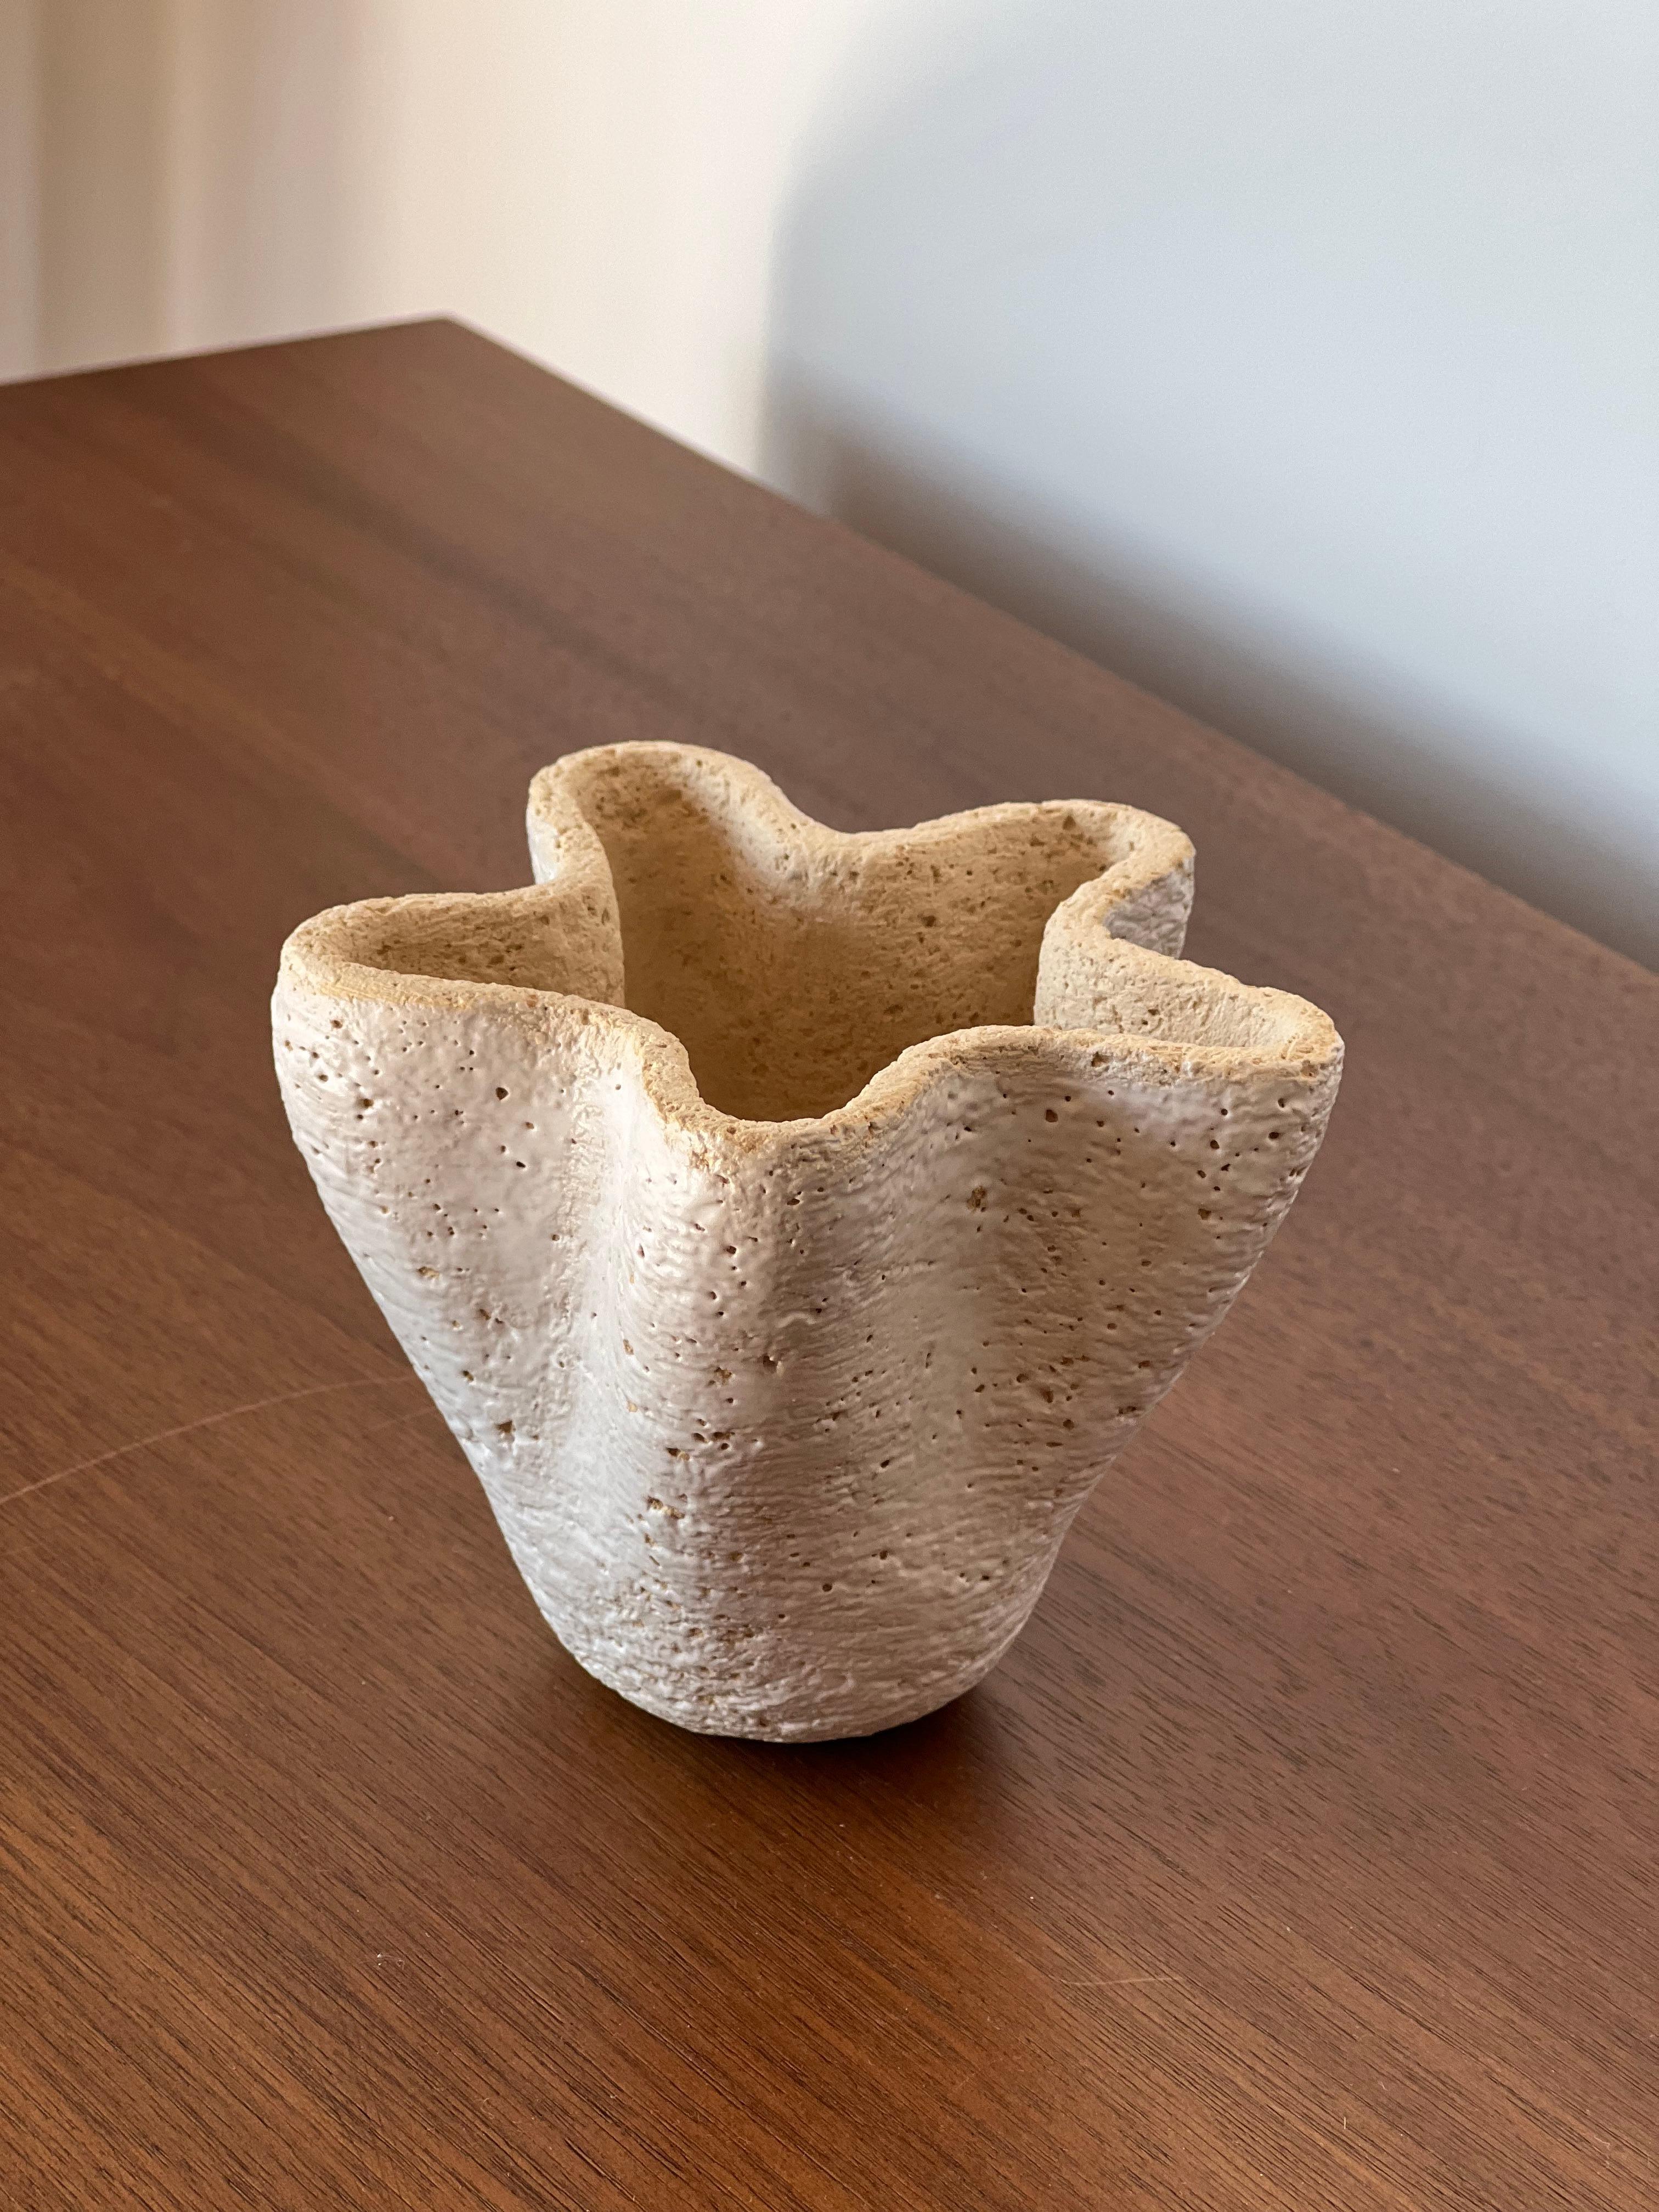 Anatolische 6-Vase von Güler Elçi
Abmessungen: B 11,4 x T 11,4 x H 12,7 cm.
MATERIALIEN: Steingut Keramik.

Güler Elçi ist eine in Istanbul ansässige Keramikkünstlerin. Vor dem Hintergrund ihrer Karriere als Ingenieurin betrachtet sie Keramik als